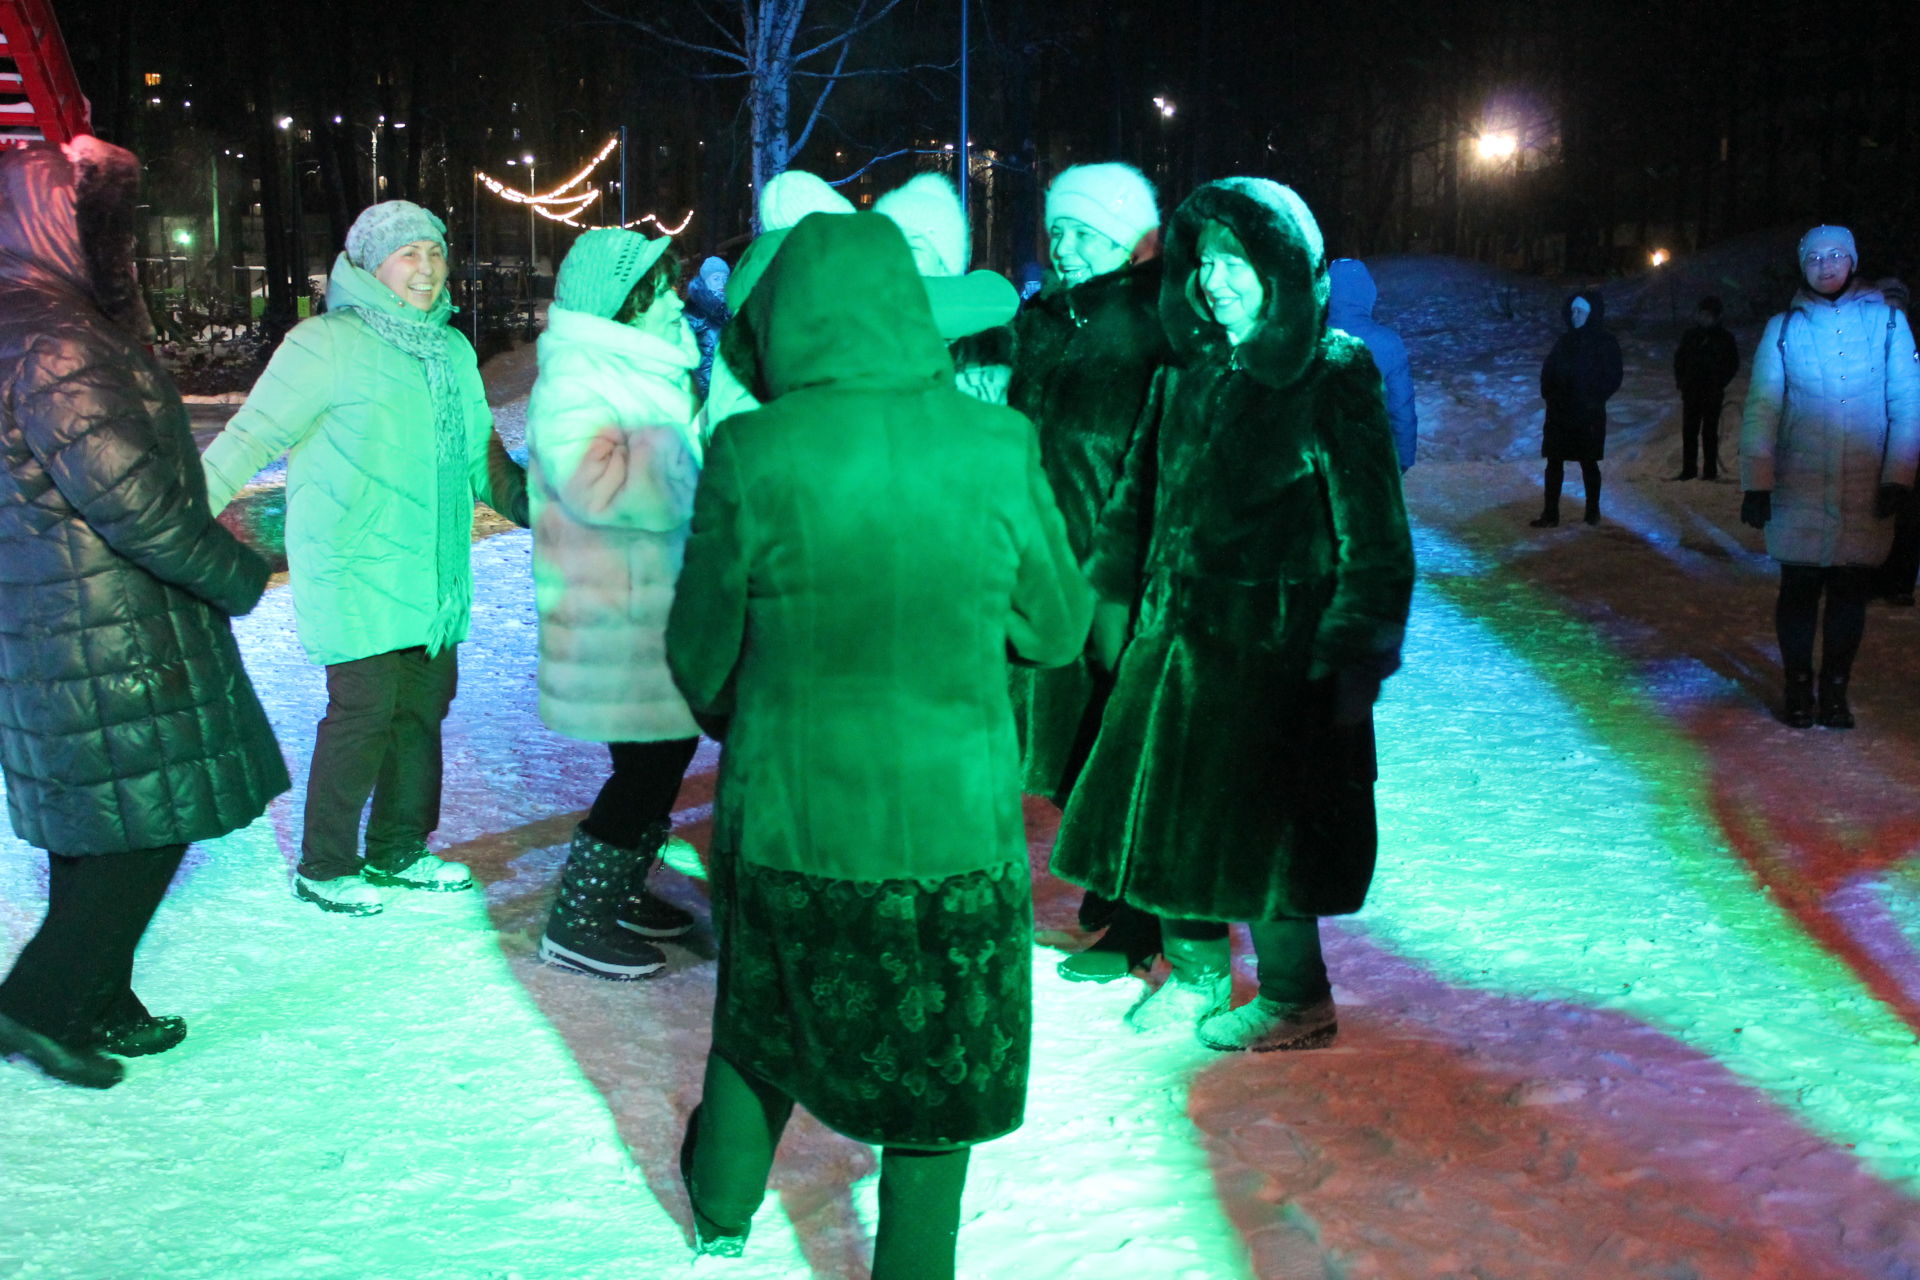 В парке ДК «Родина» на танцверанде «Фиалка» проходят танцевальные вечера